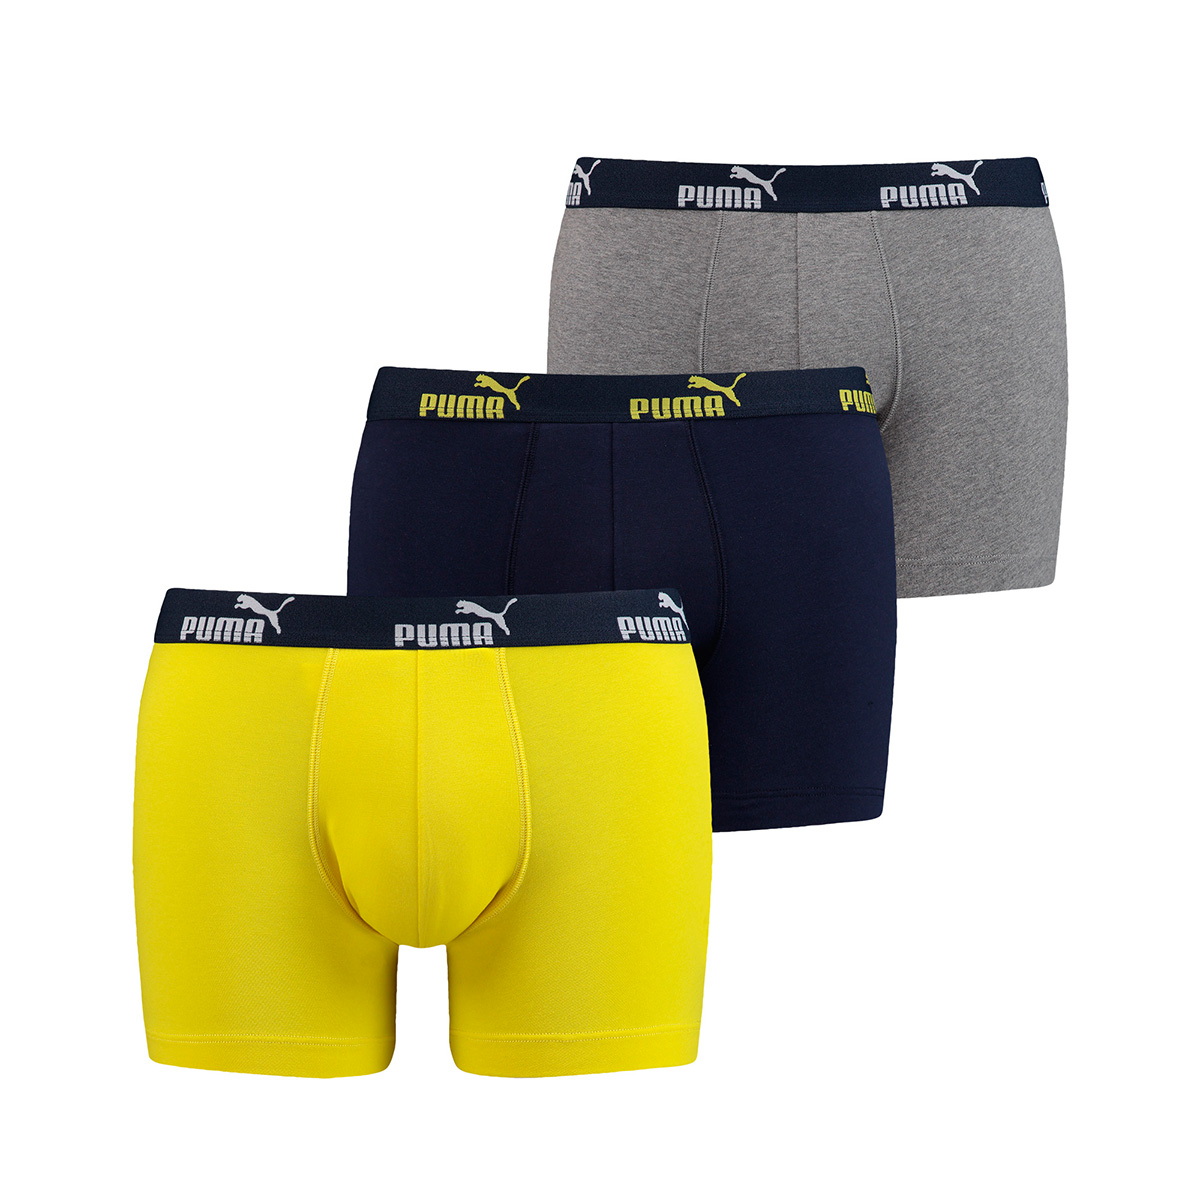 Puma 6 er Pack Boxer Boxershorts Herren Unterwäsche sportliche Retro Pants, Bekleidungsgröße:L, Farbe:960 - Navy/Yellow